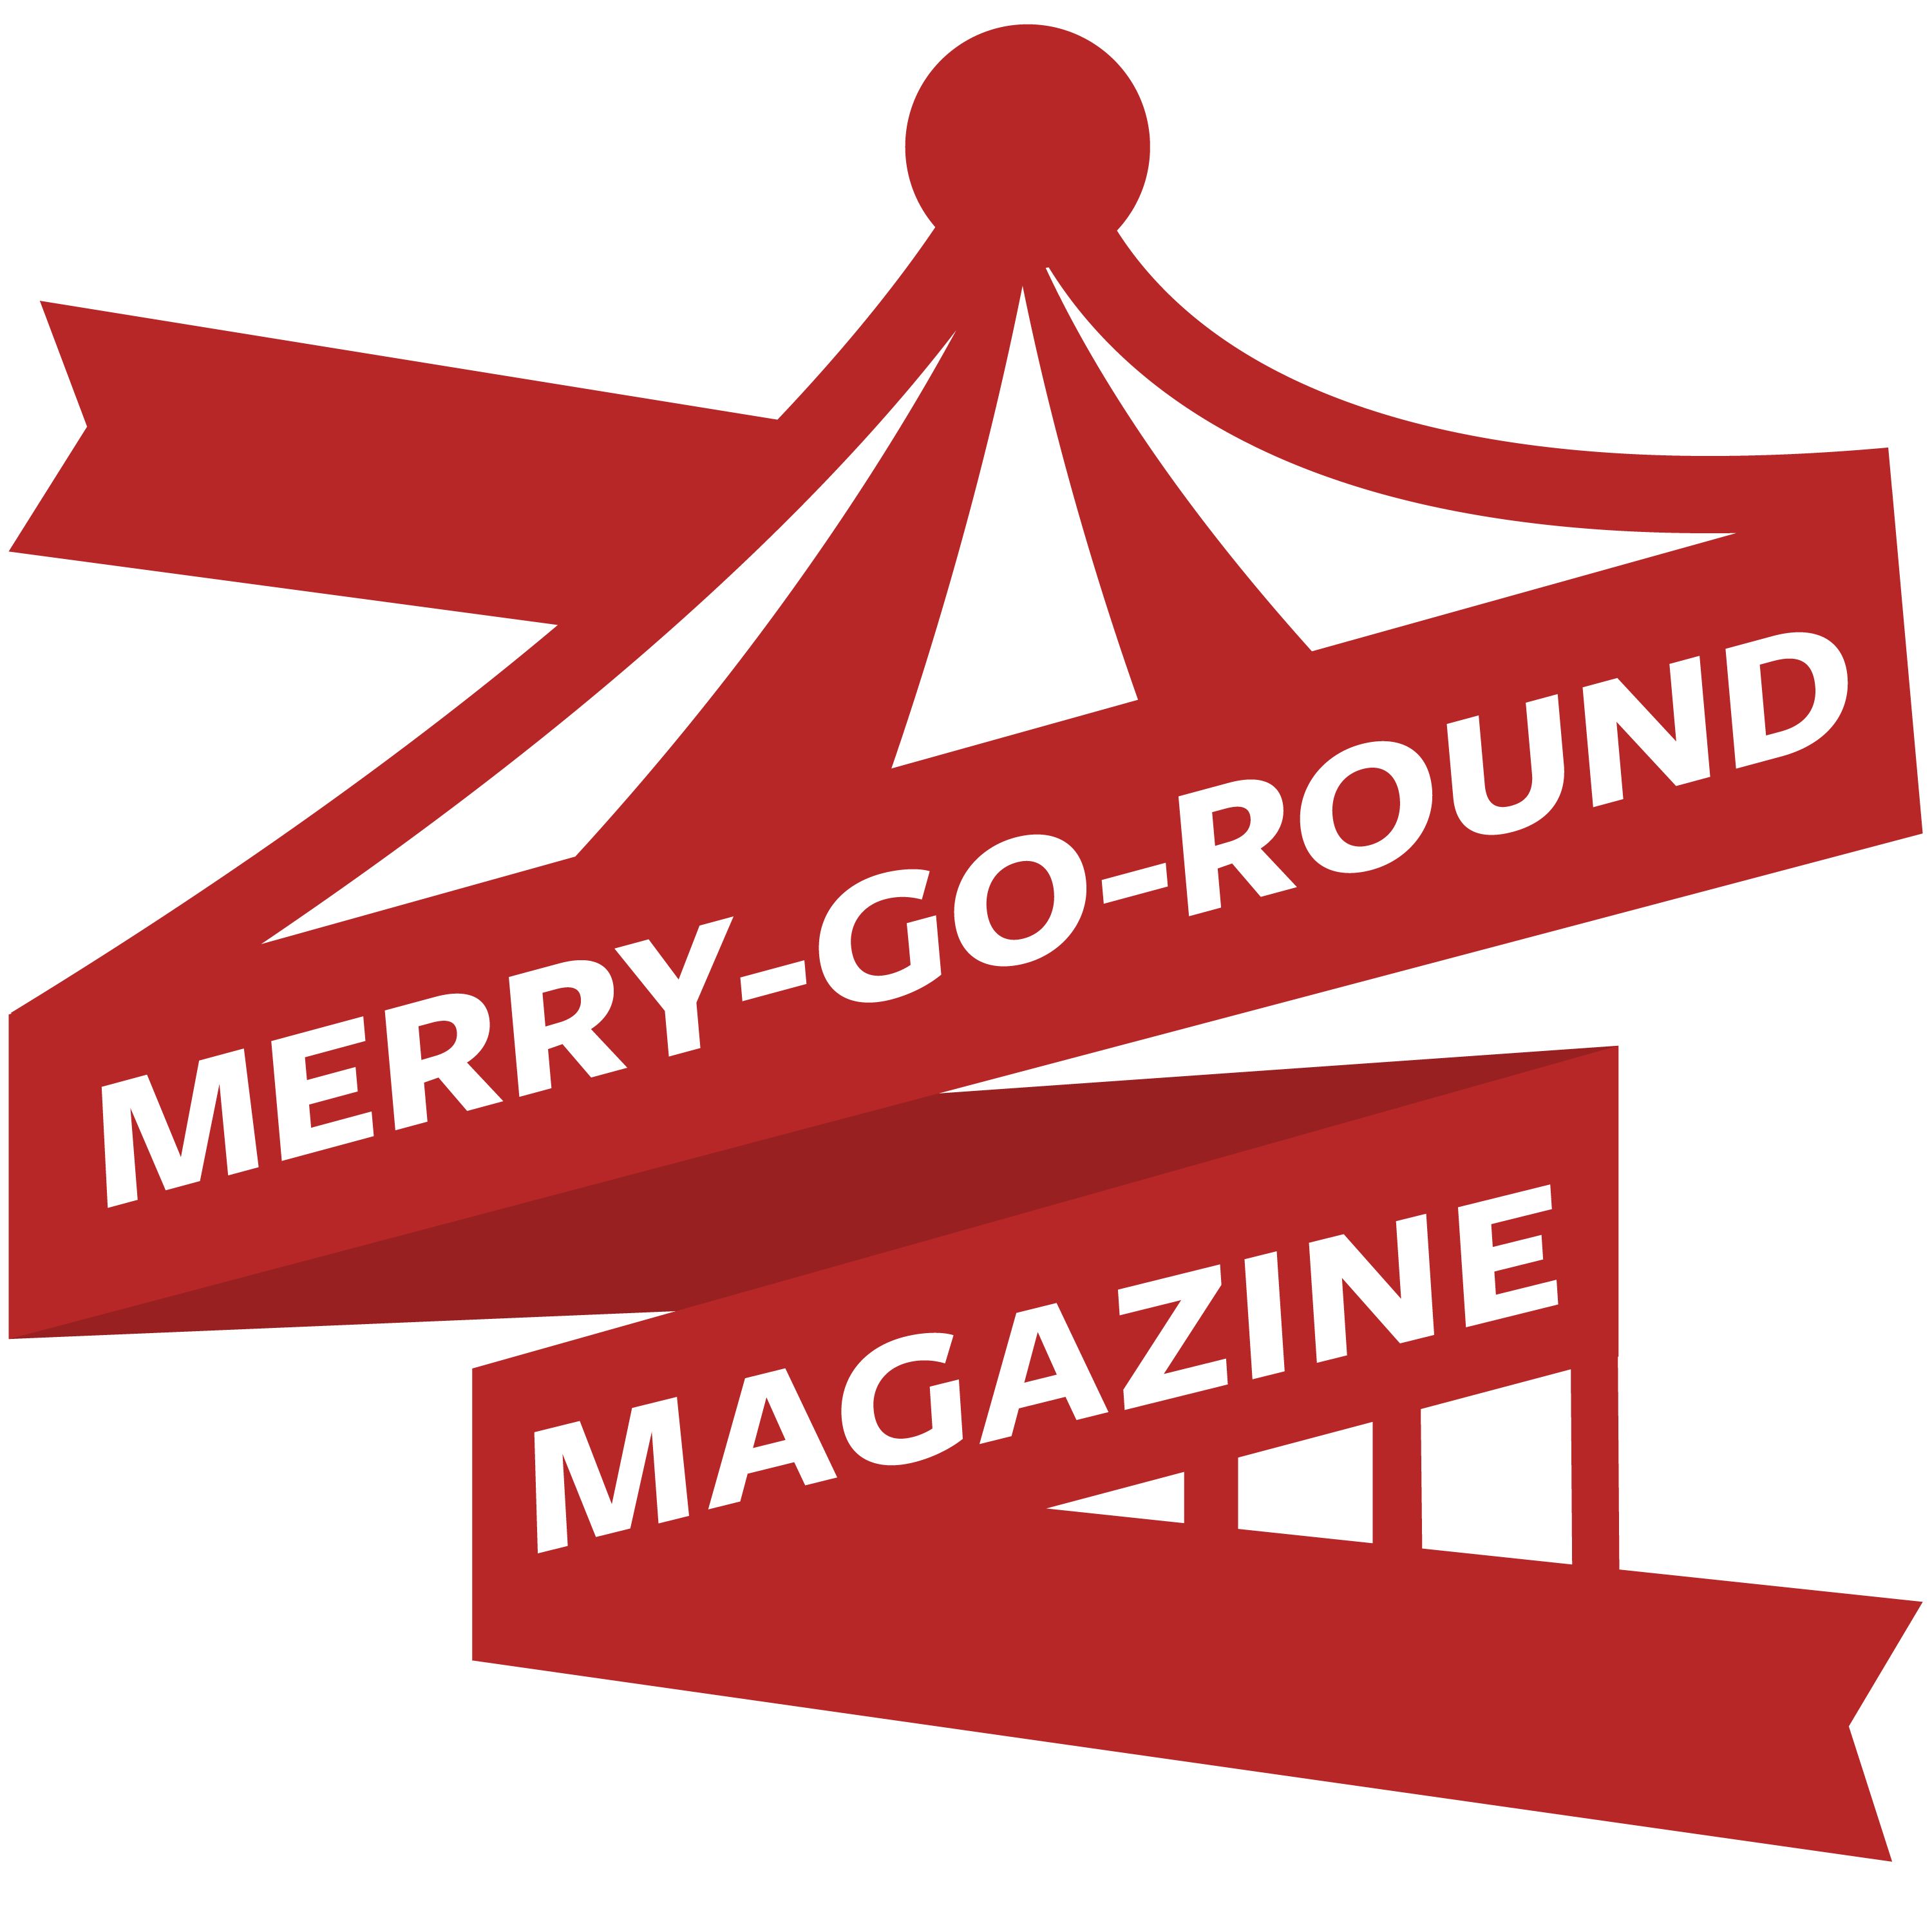 Merry-Go-Roundtable